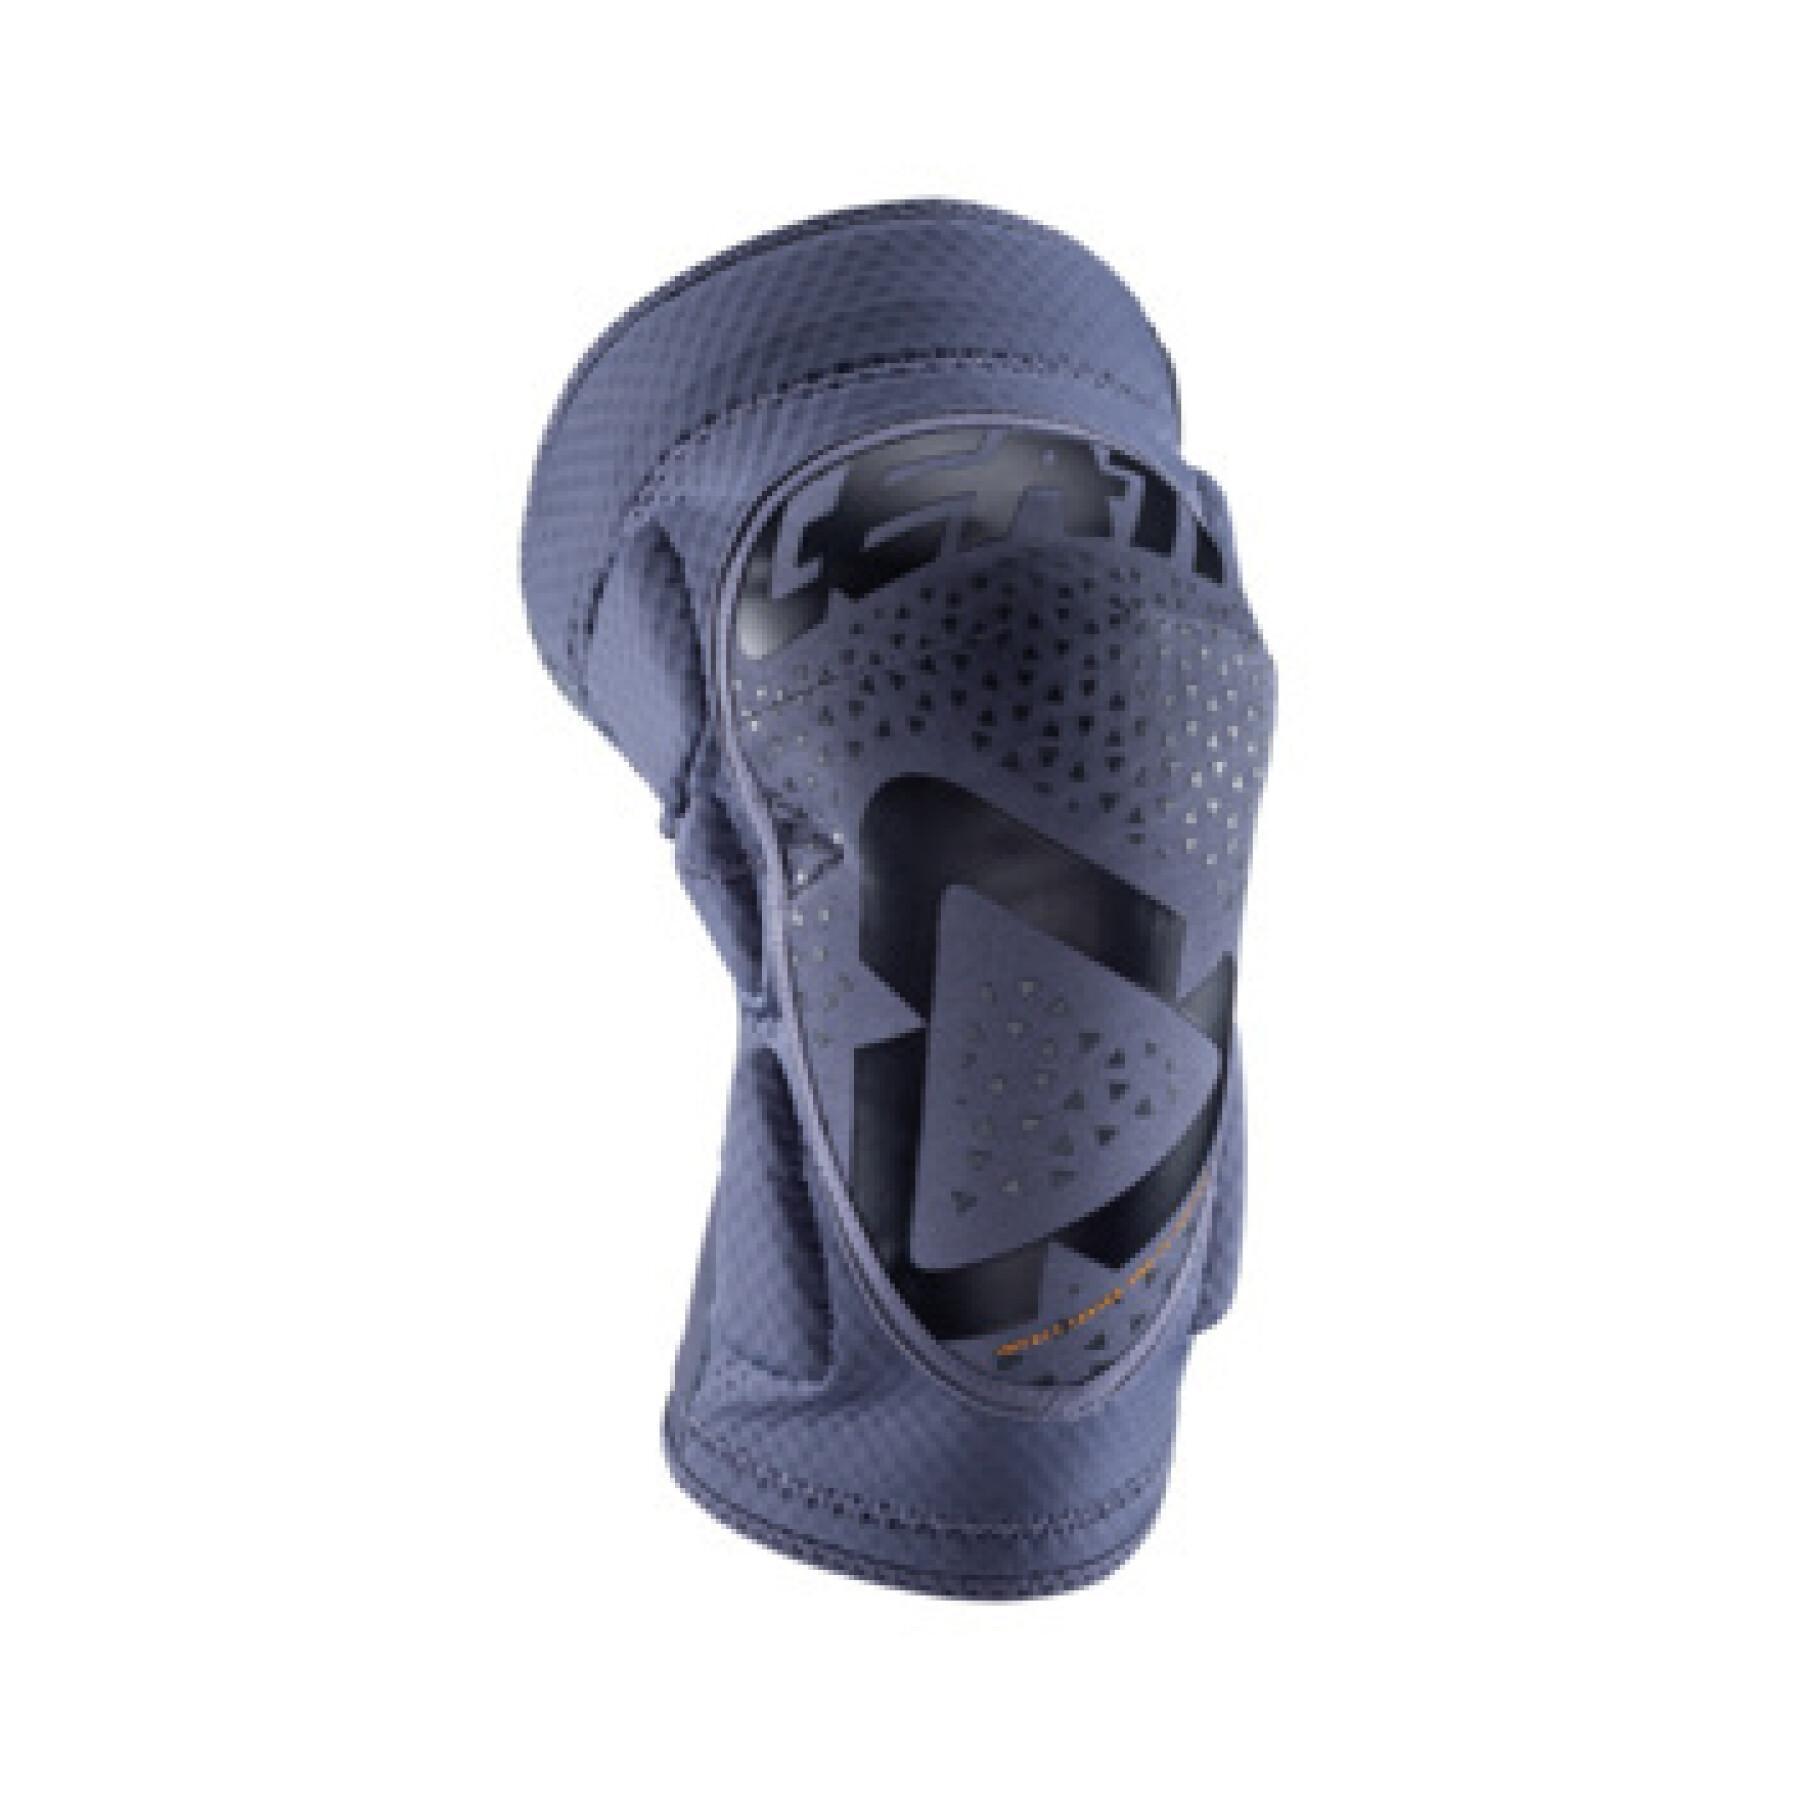 Cross motorcycle kneepad with zip Leatt 3DF 5.0